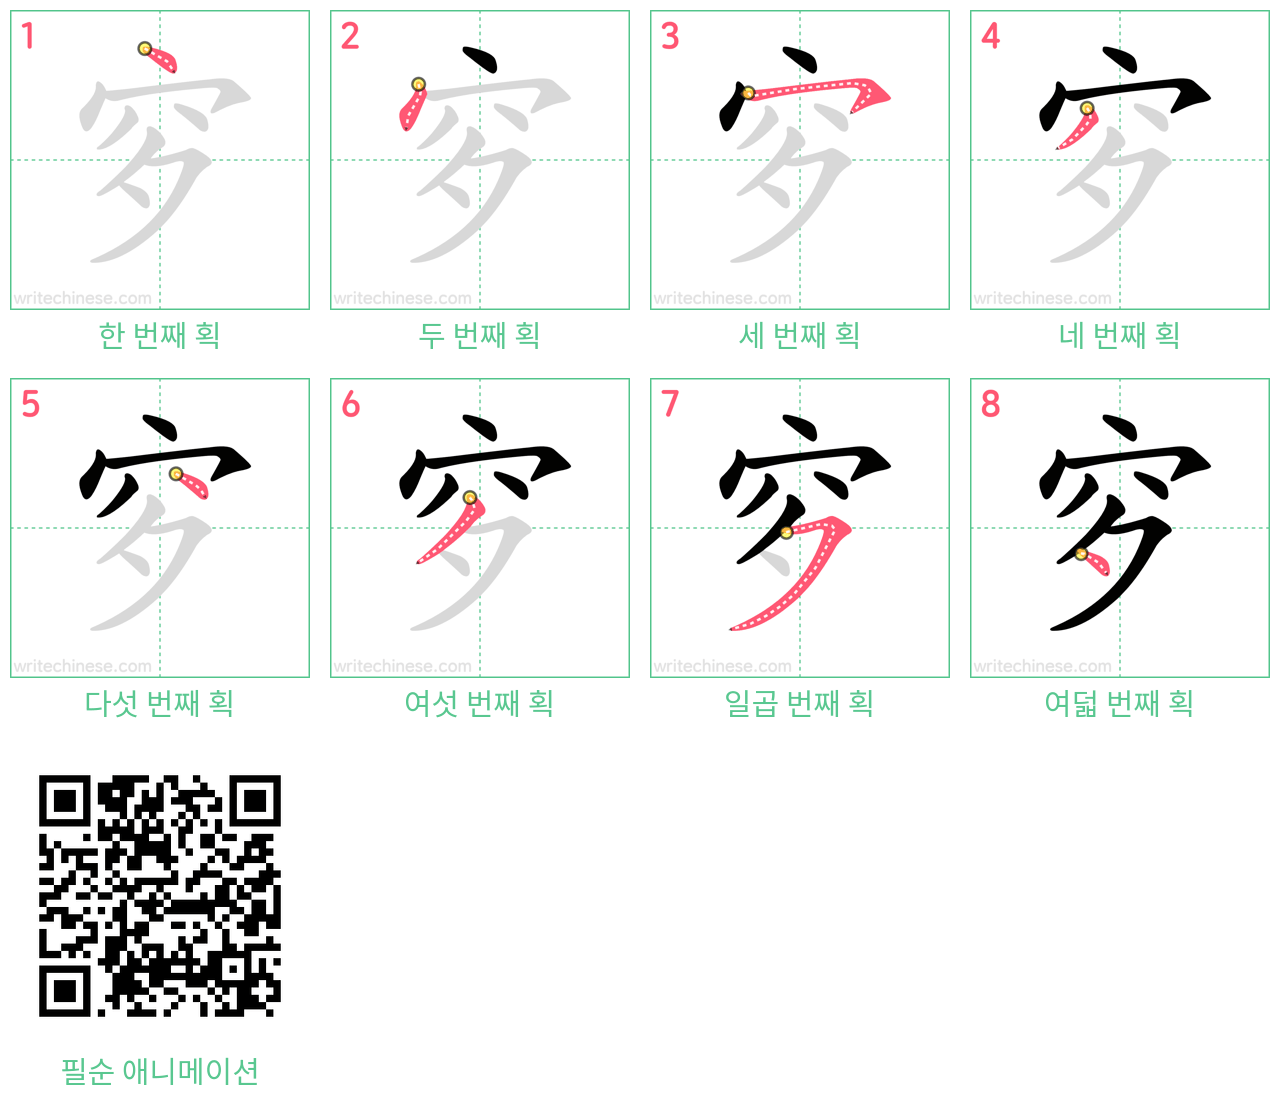 穸 step-by-step stroke order diagrams